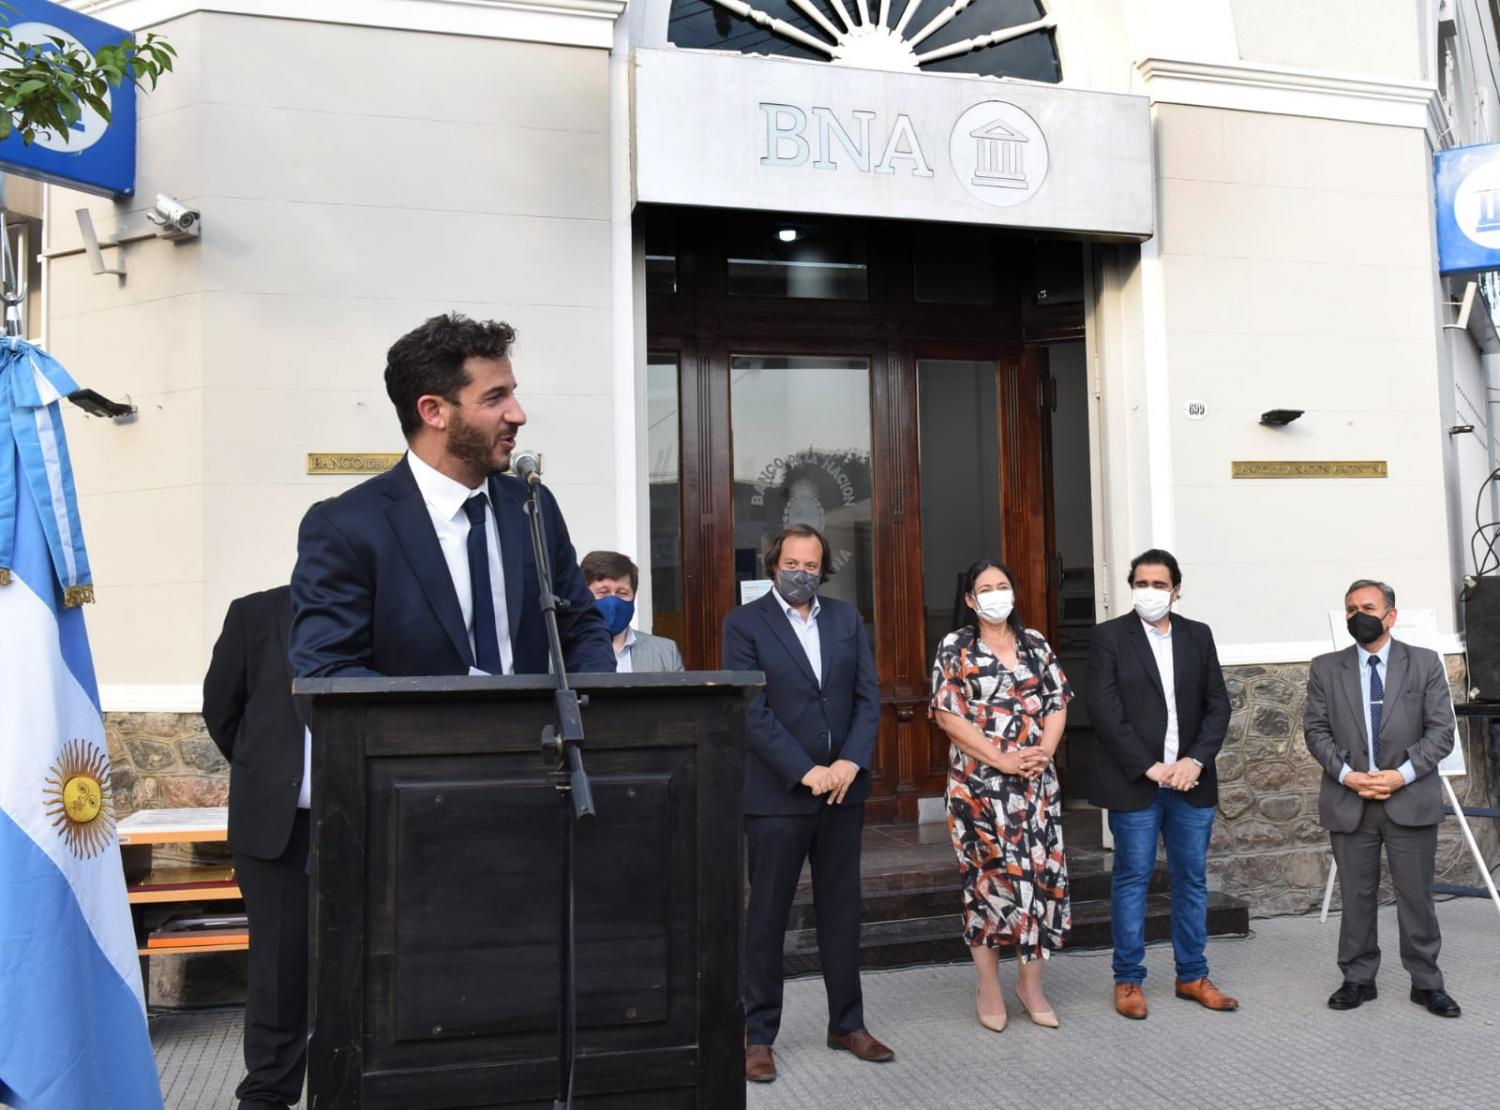 EN AGUILARES. La ceremonia se celebró a las puertas de la sucursal del Banco Nación. foto: Prensa Legislatura